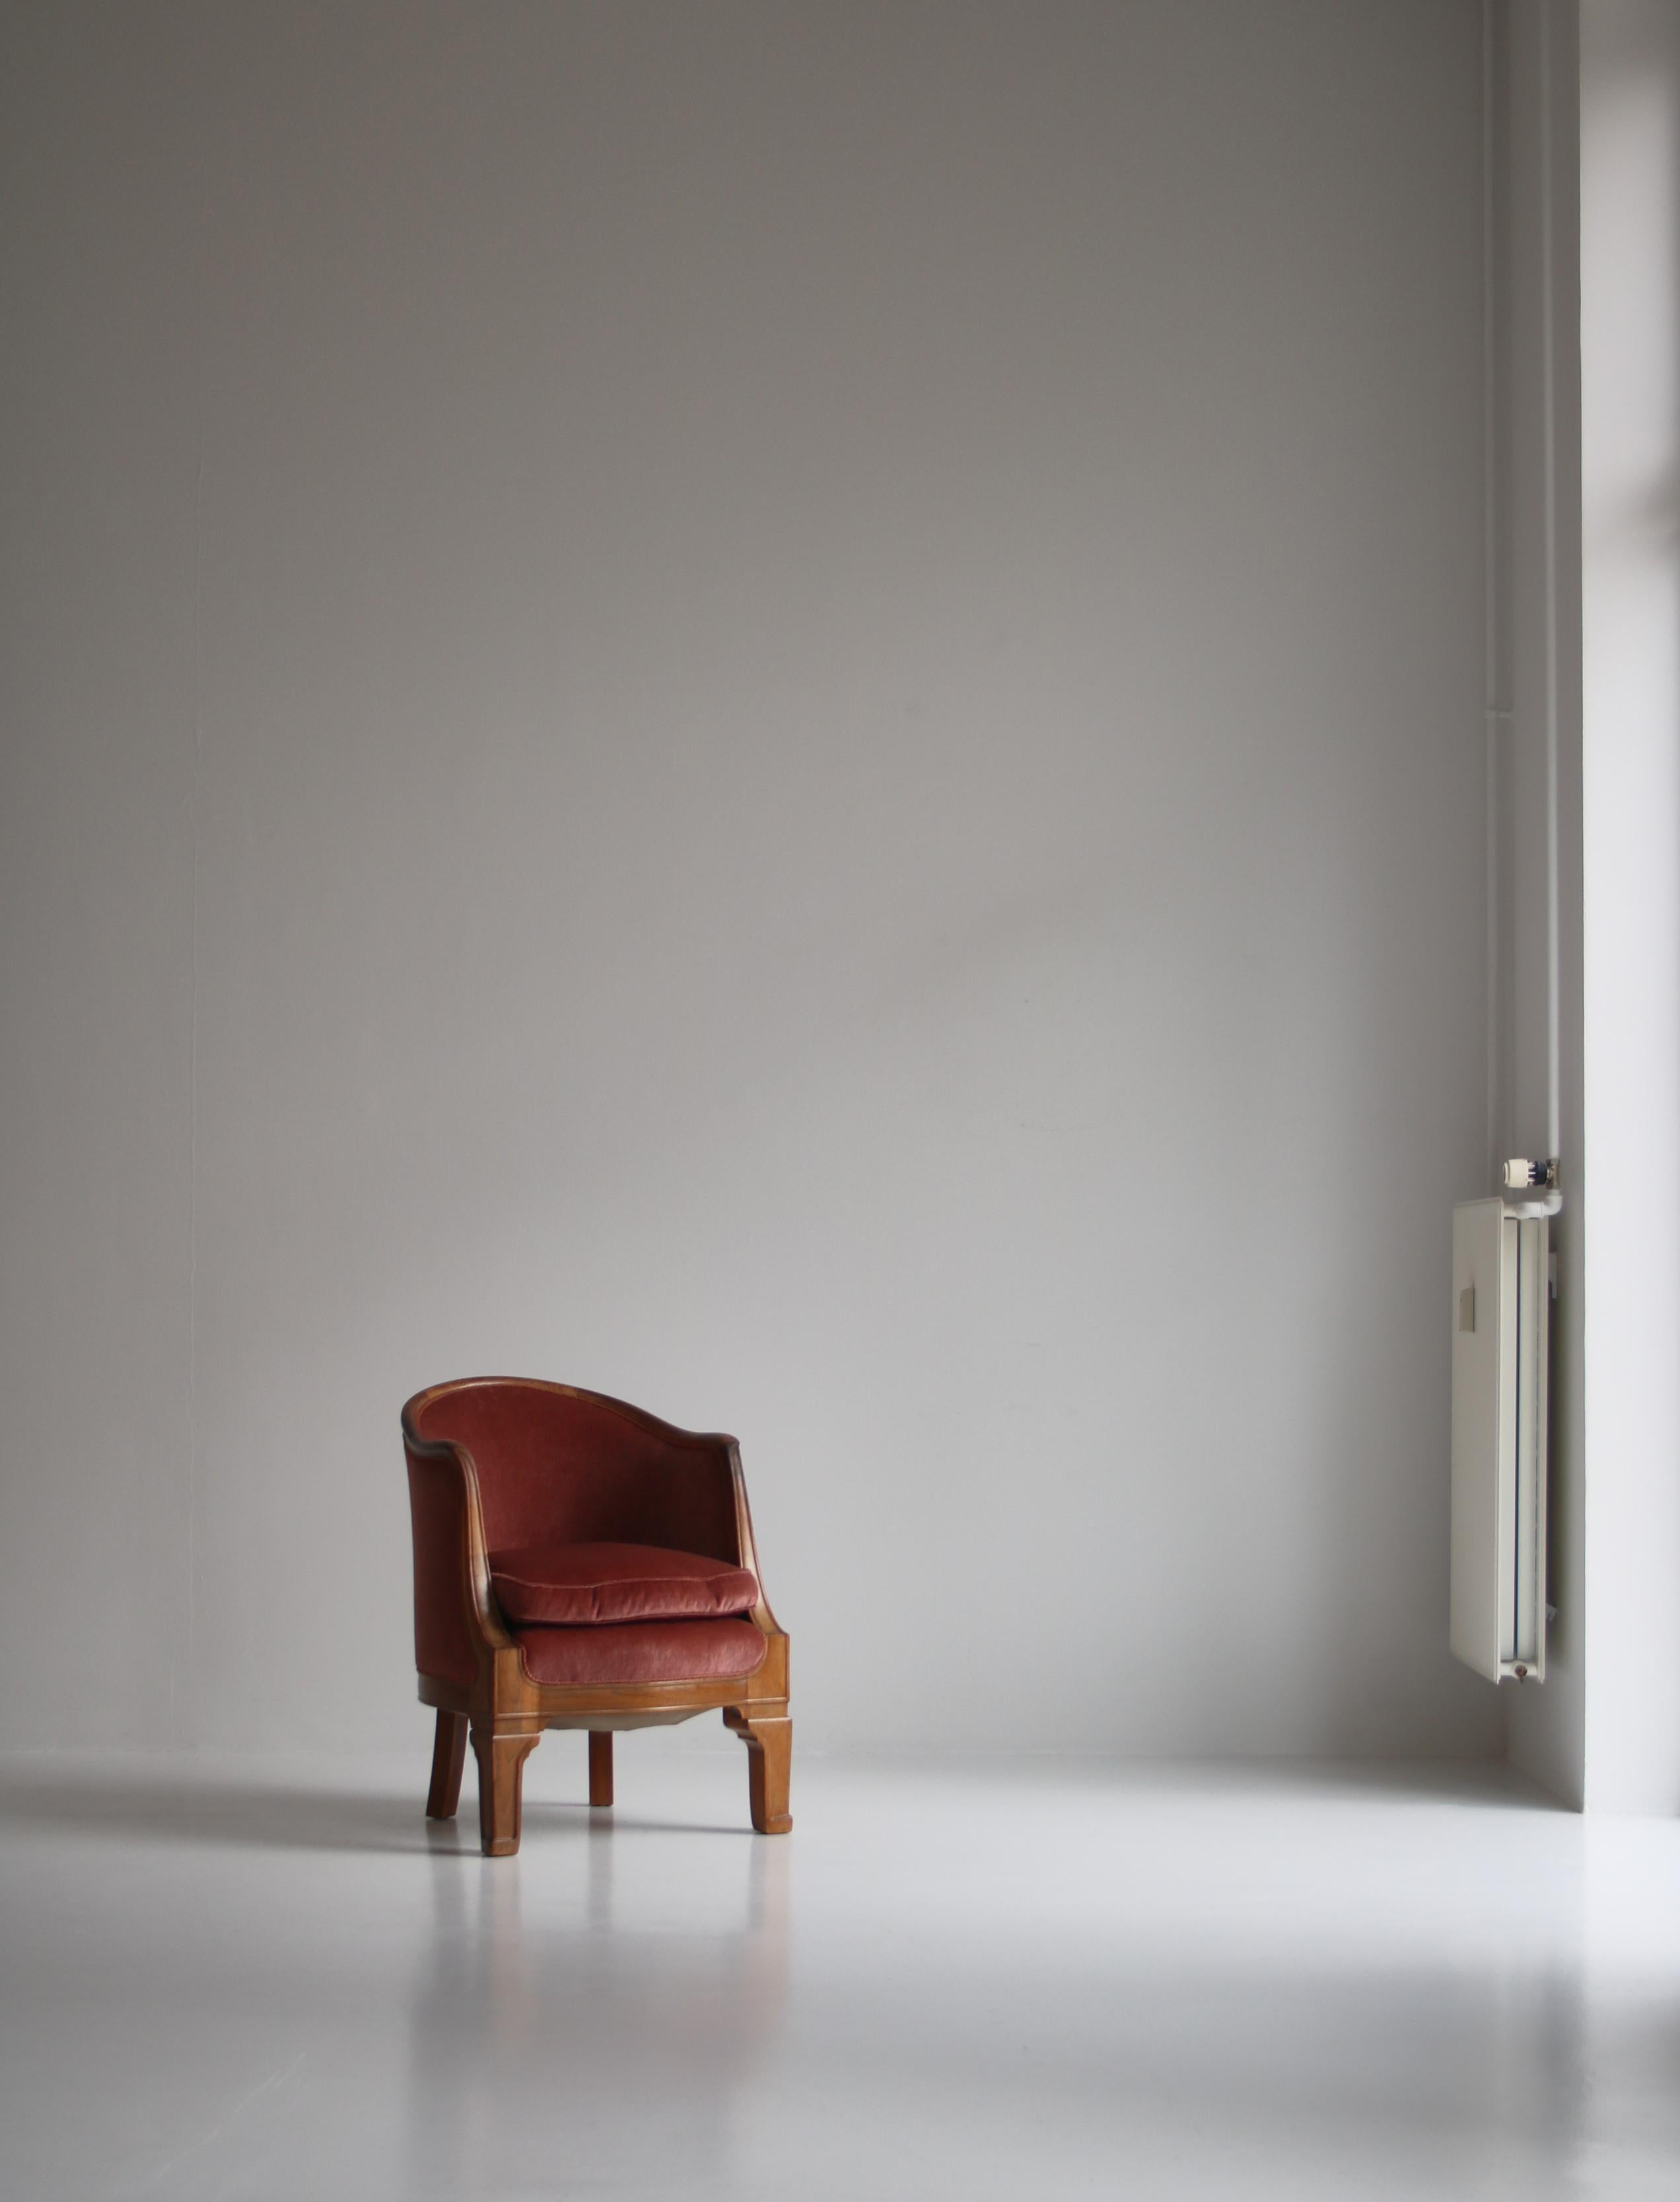 Charmante Sessel eines dänischen Tischlers aus dem frühen 20. Jahrhundert. Der Stuhl ist aus massivem Palisanderholz mit einer erstaunlichen Maserung gefertigt und mit weichem rosa Samt gepolstert. Die Handwerkskunst dieses Stücks ist atemberaubend,